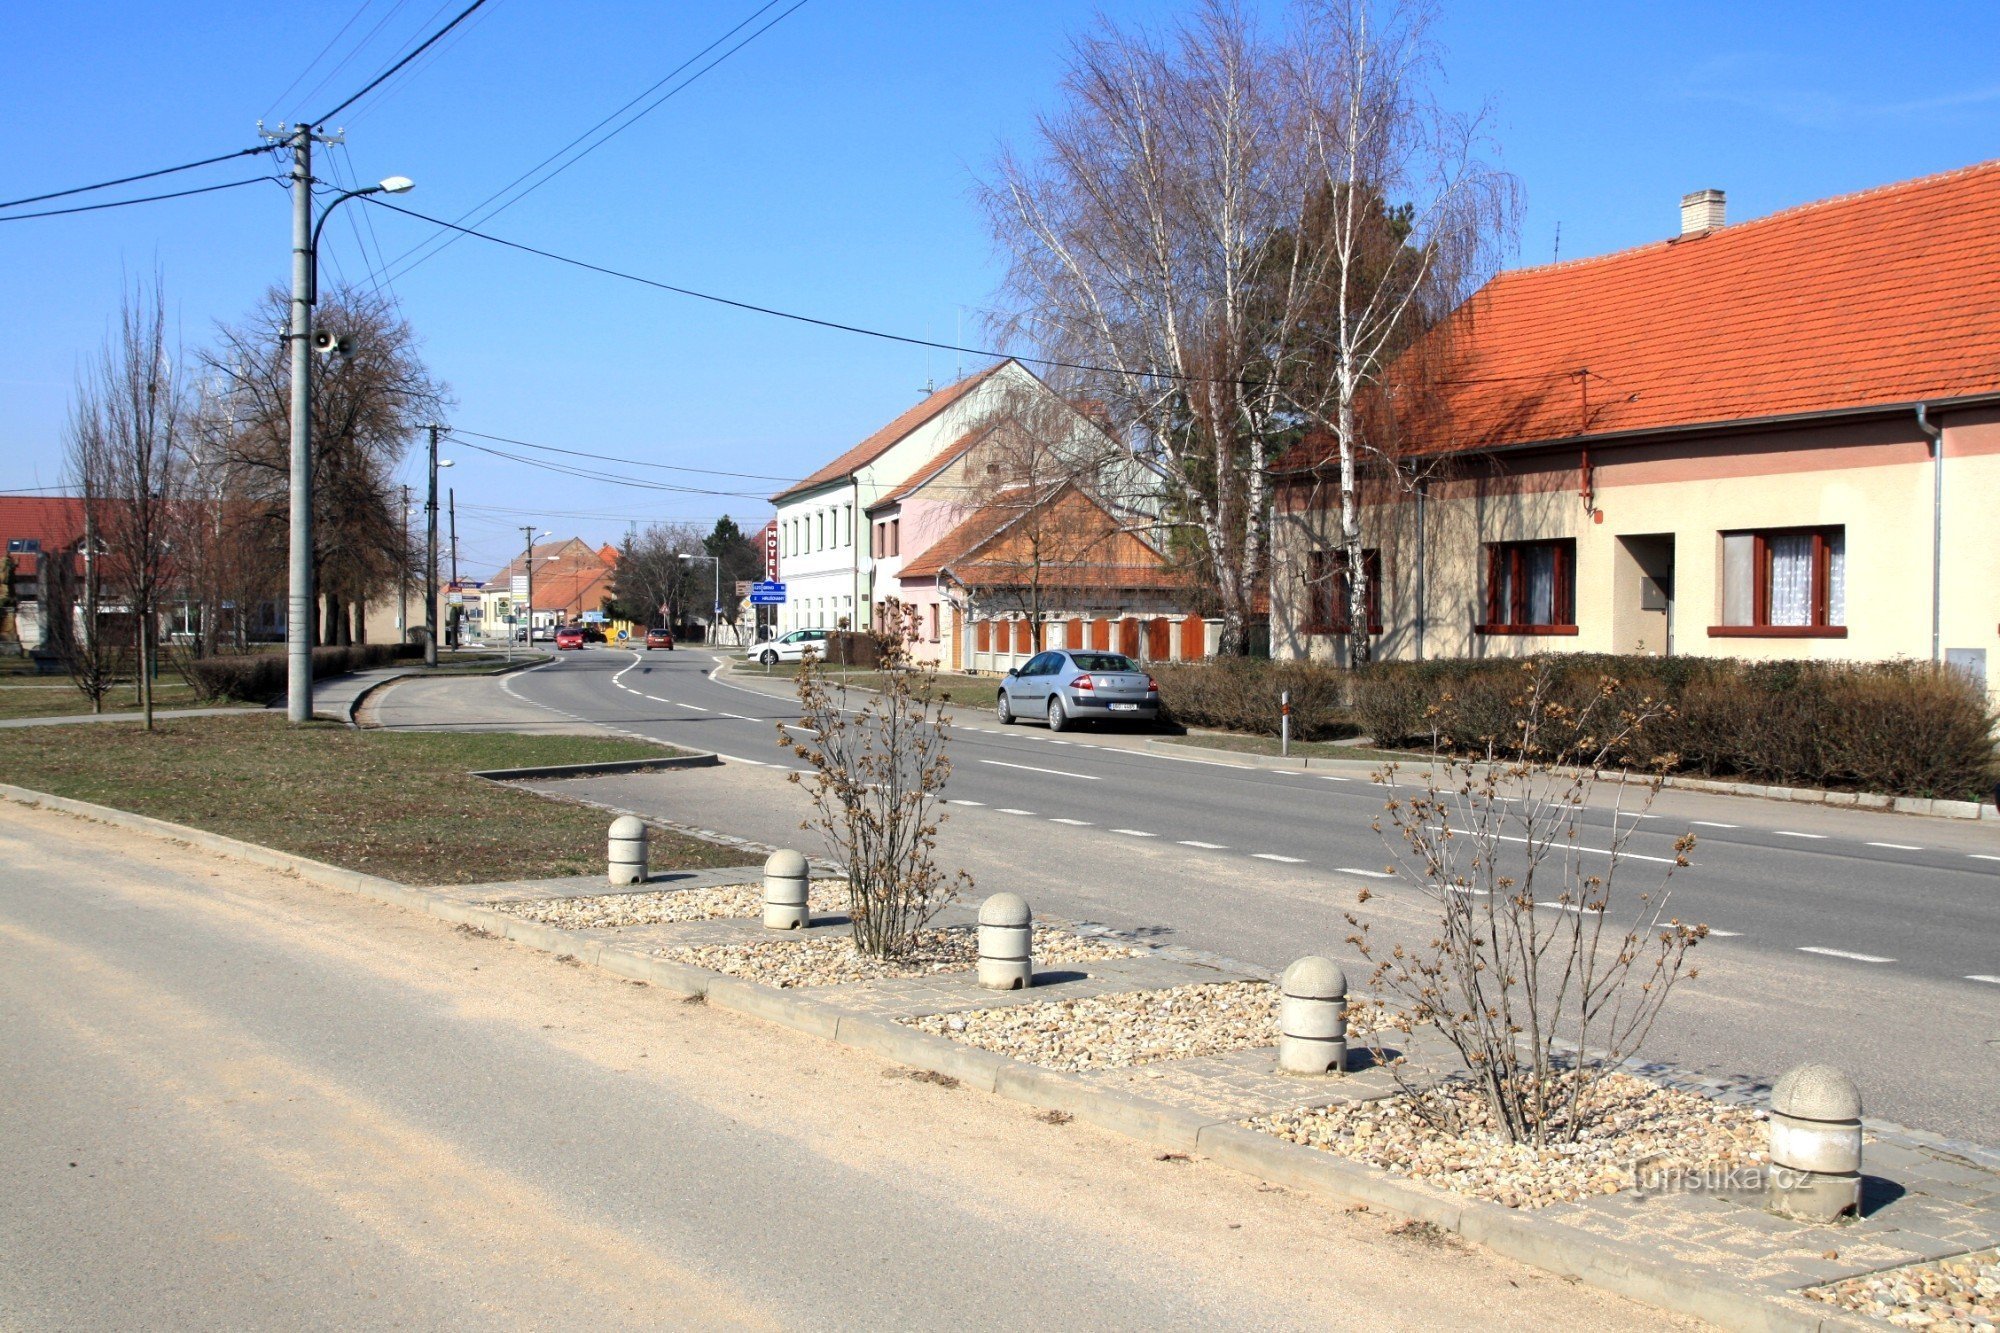 La strada principale di Vojkovice